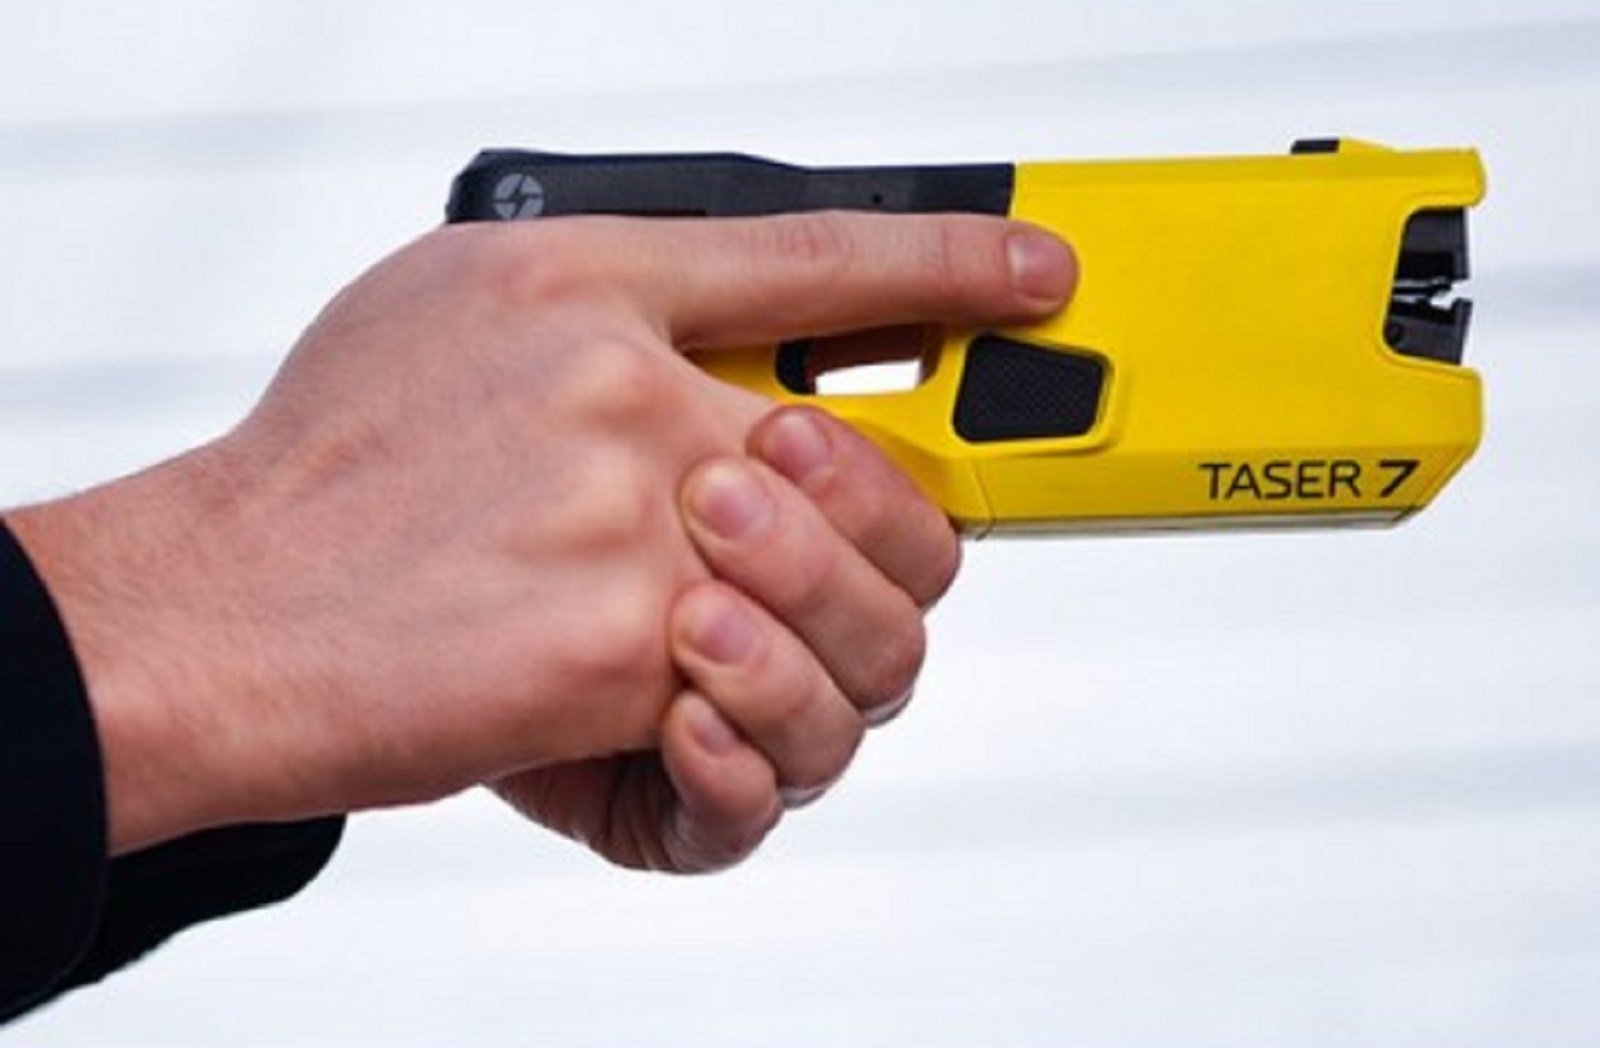 La policia espanyola no haurà de gravar les seves actuacions amb pistola Taser